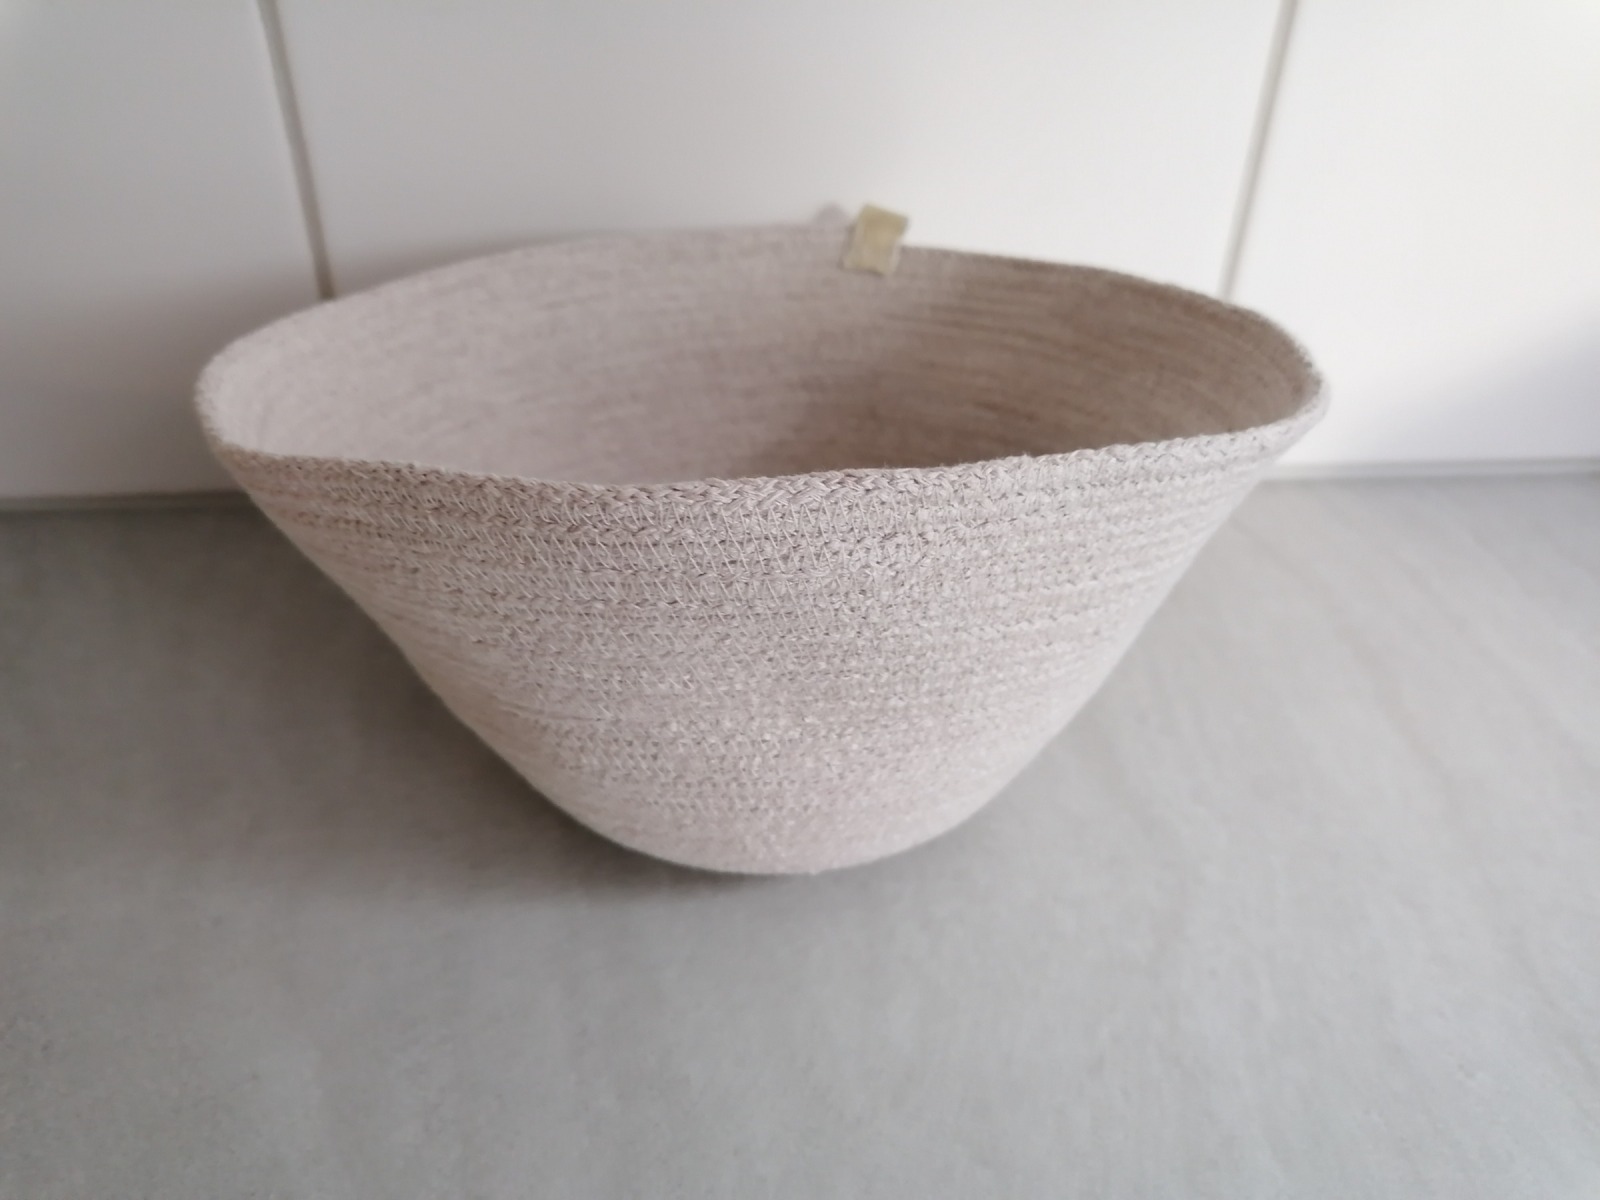 Robe Bowl creme, 23 x 13 cm